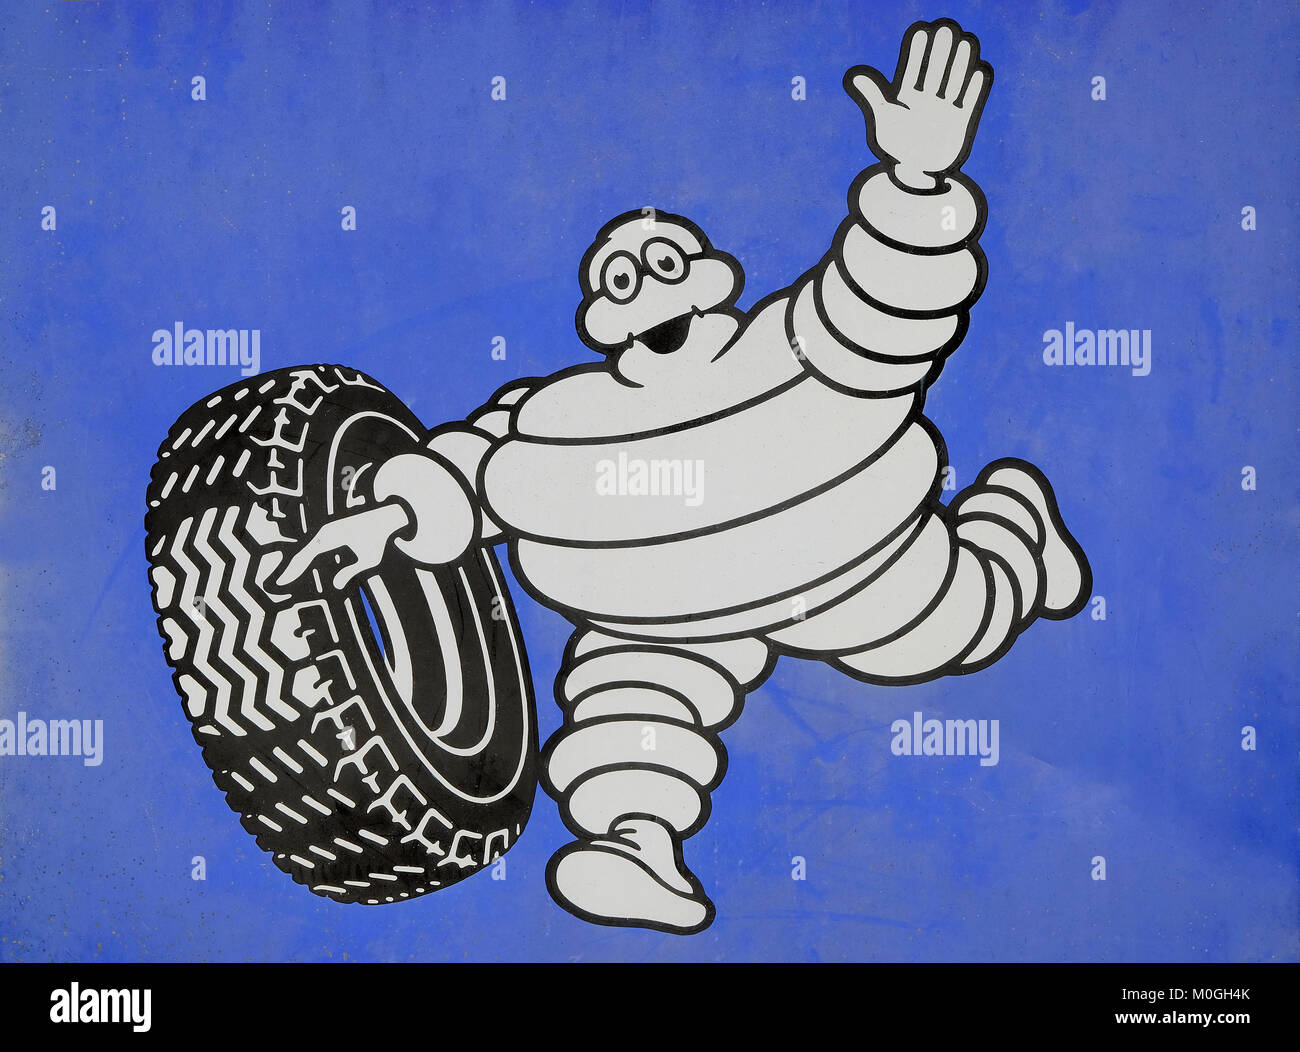 Michelin logo fotografías e imágenes de alta resolución - Alamy